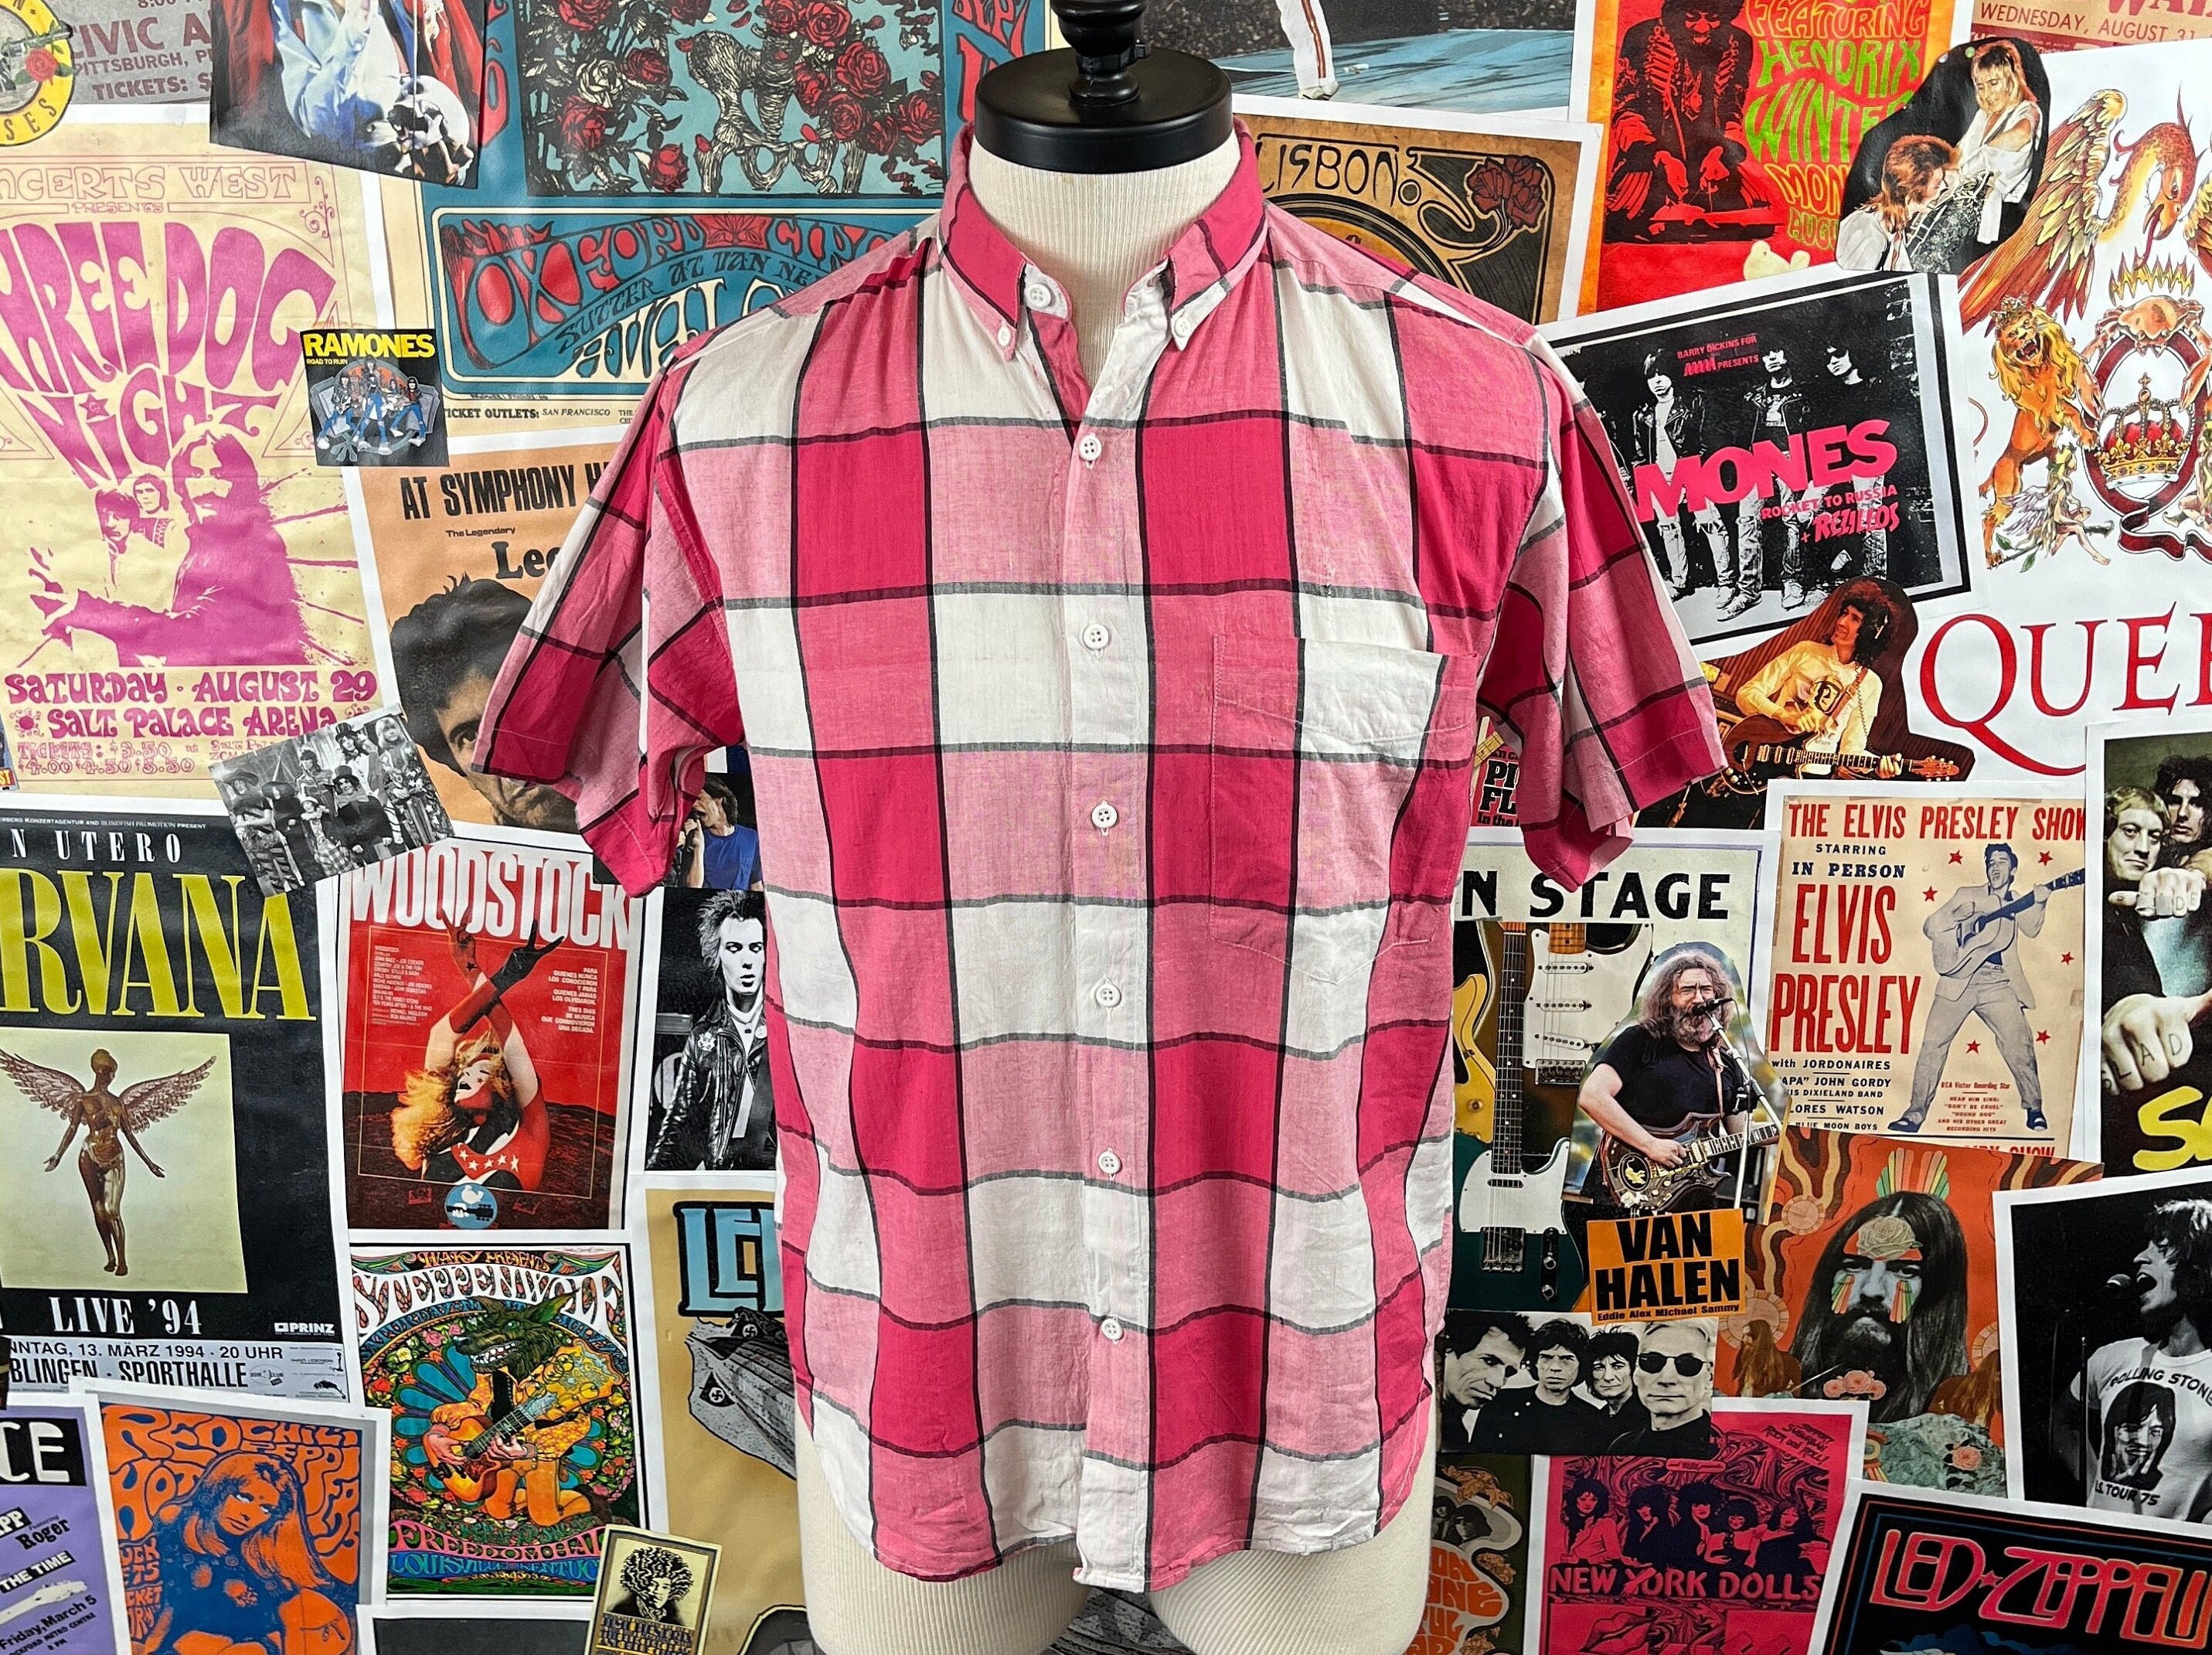 Vintage SHAH~SAFARI Reworked Cropped Shirt - cropped shirt - printed shirt